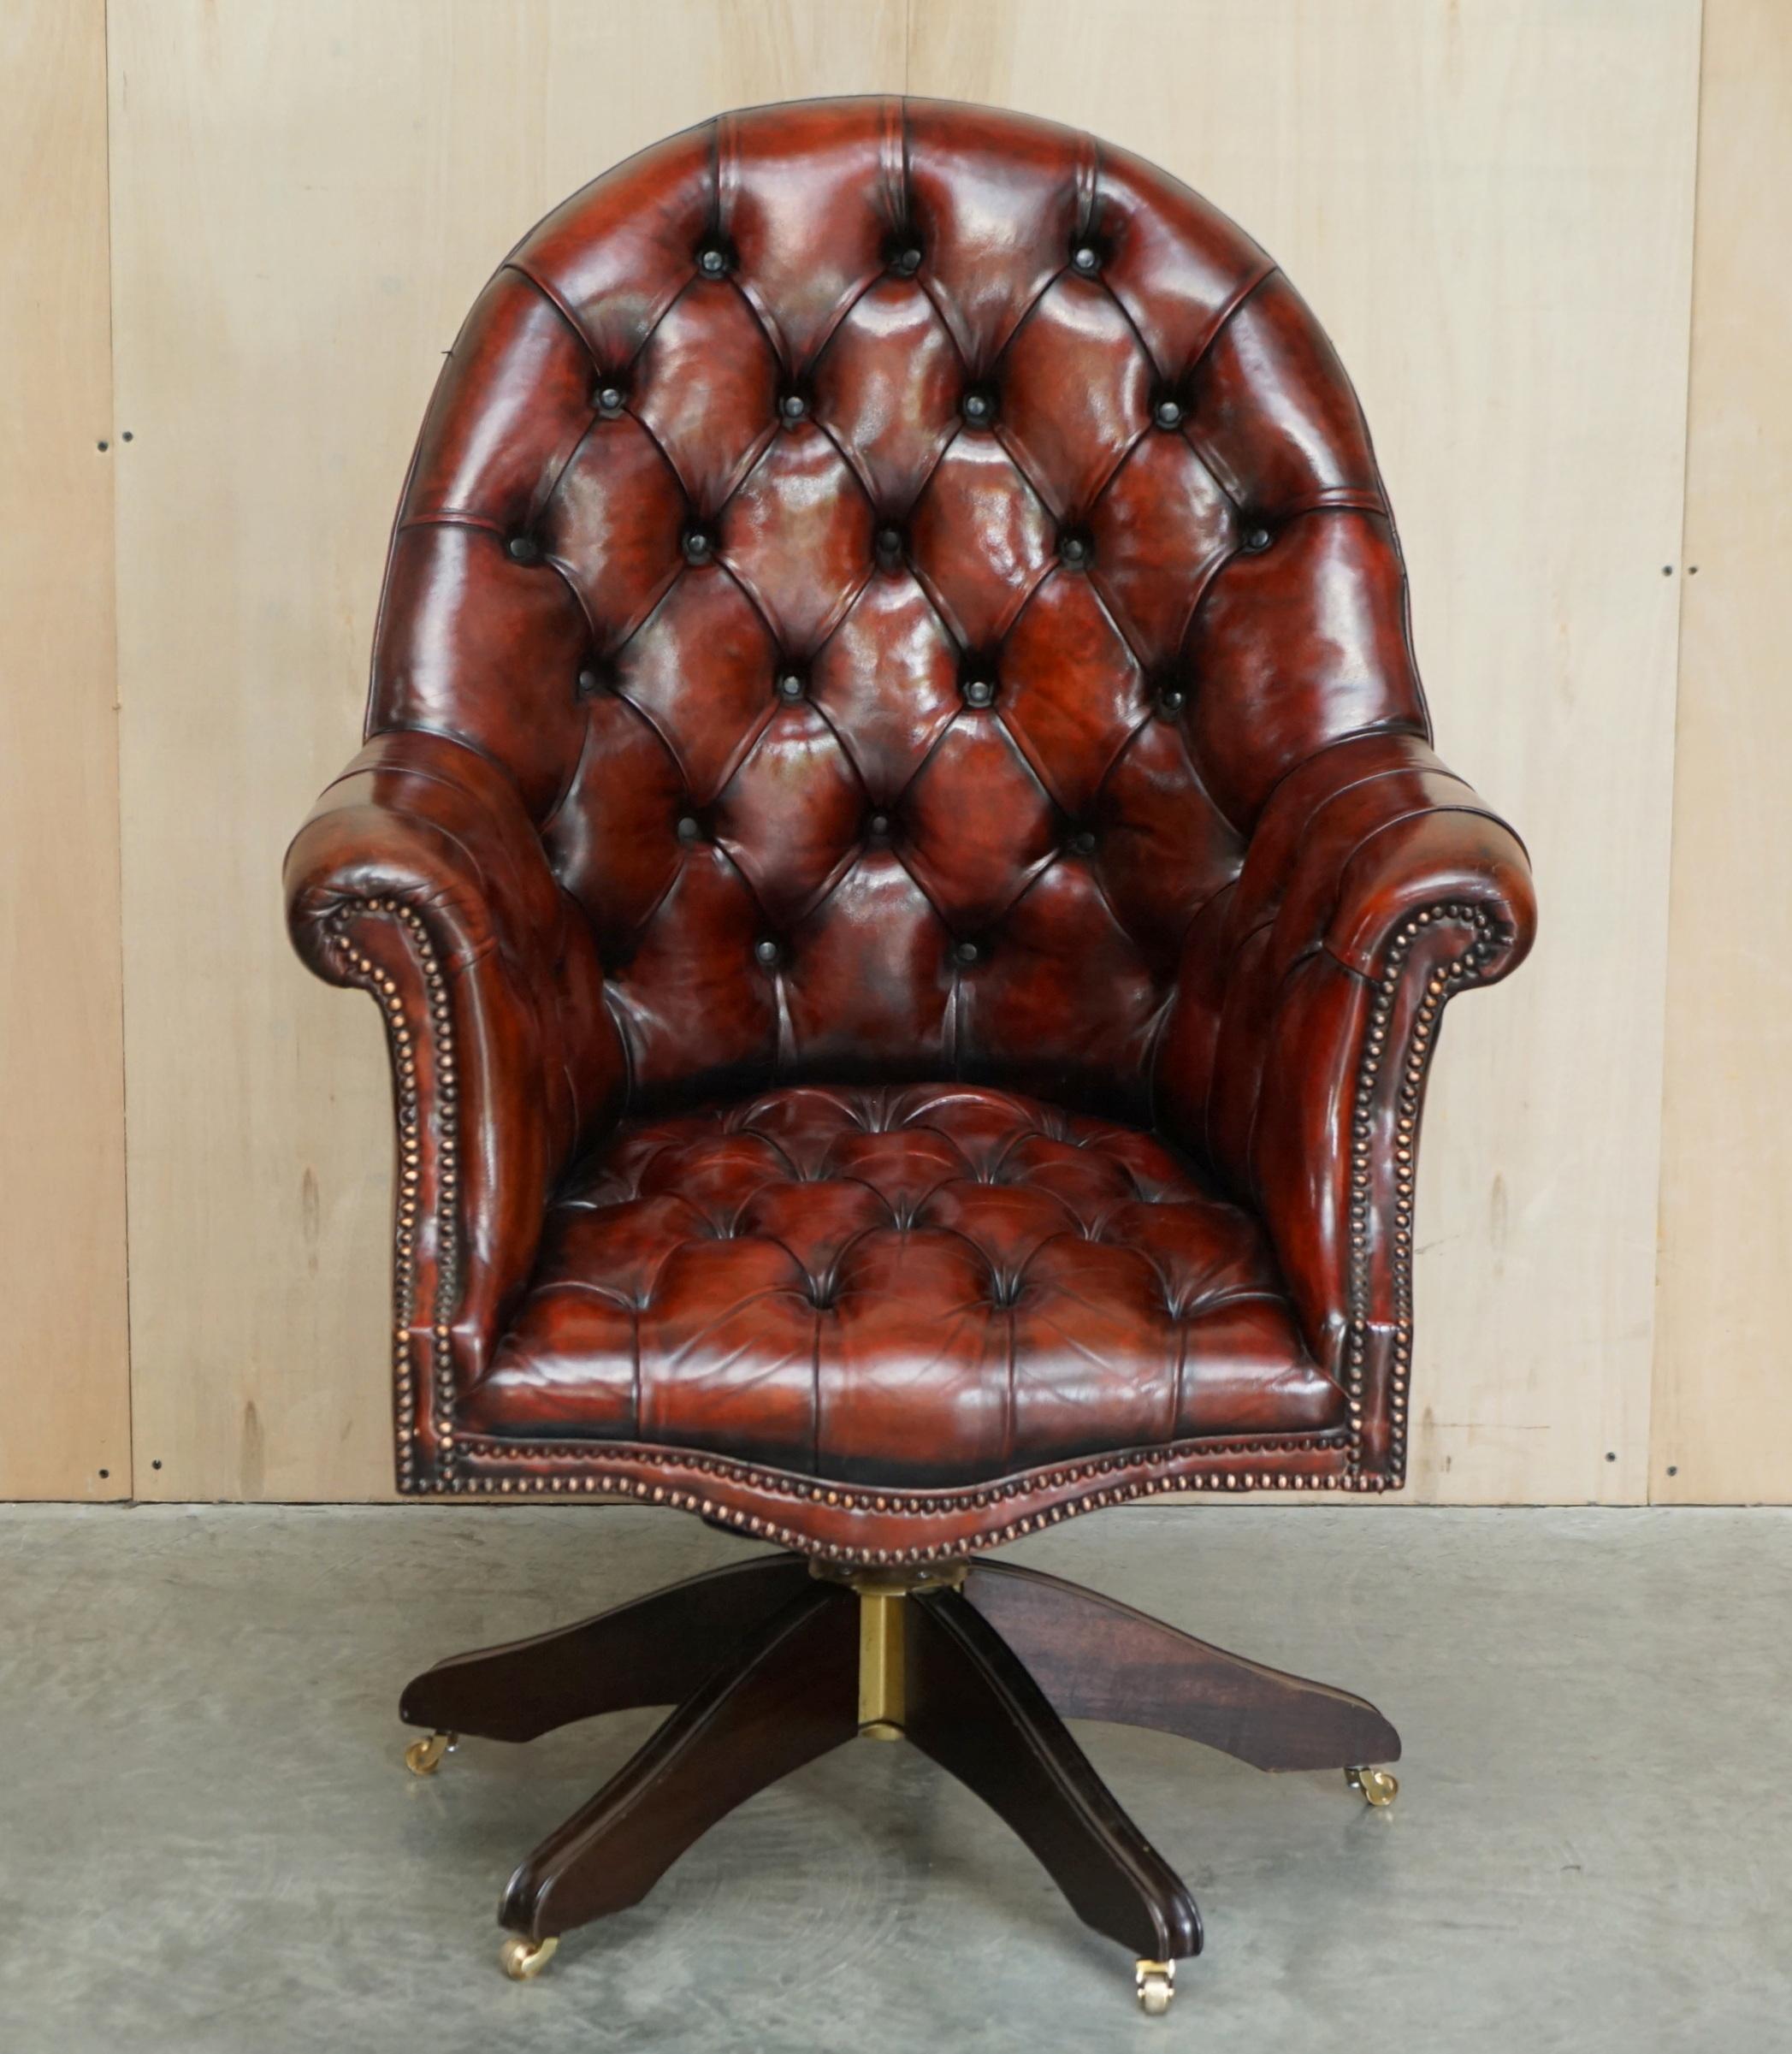 Royal House Antiques

The House Antiques a le plaisir d'offrir à la vente ce charmant fauteuil de directeur en cuir marron Chesterfield teint à la main vers 1900, entièrement restauré et encadré en chêne.

Veuillez noter que les frais de livraison